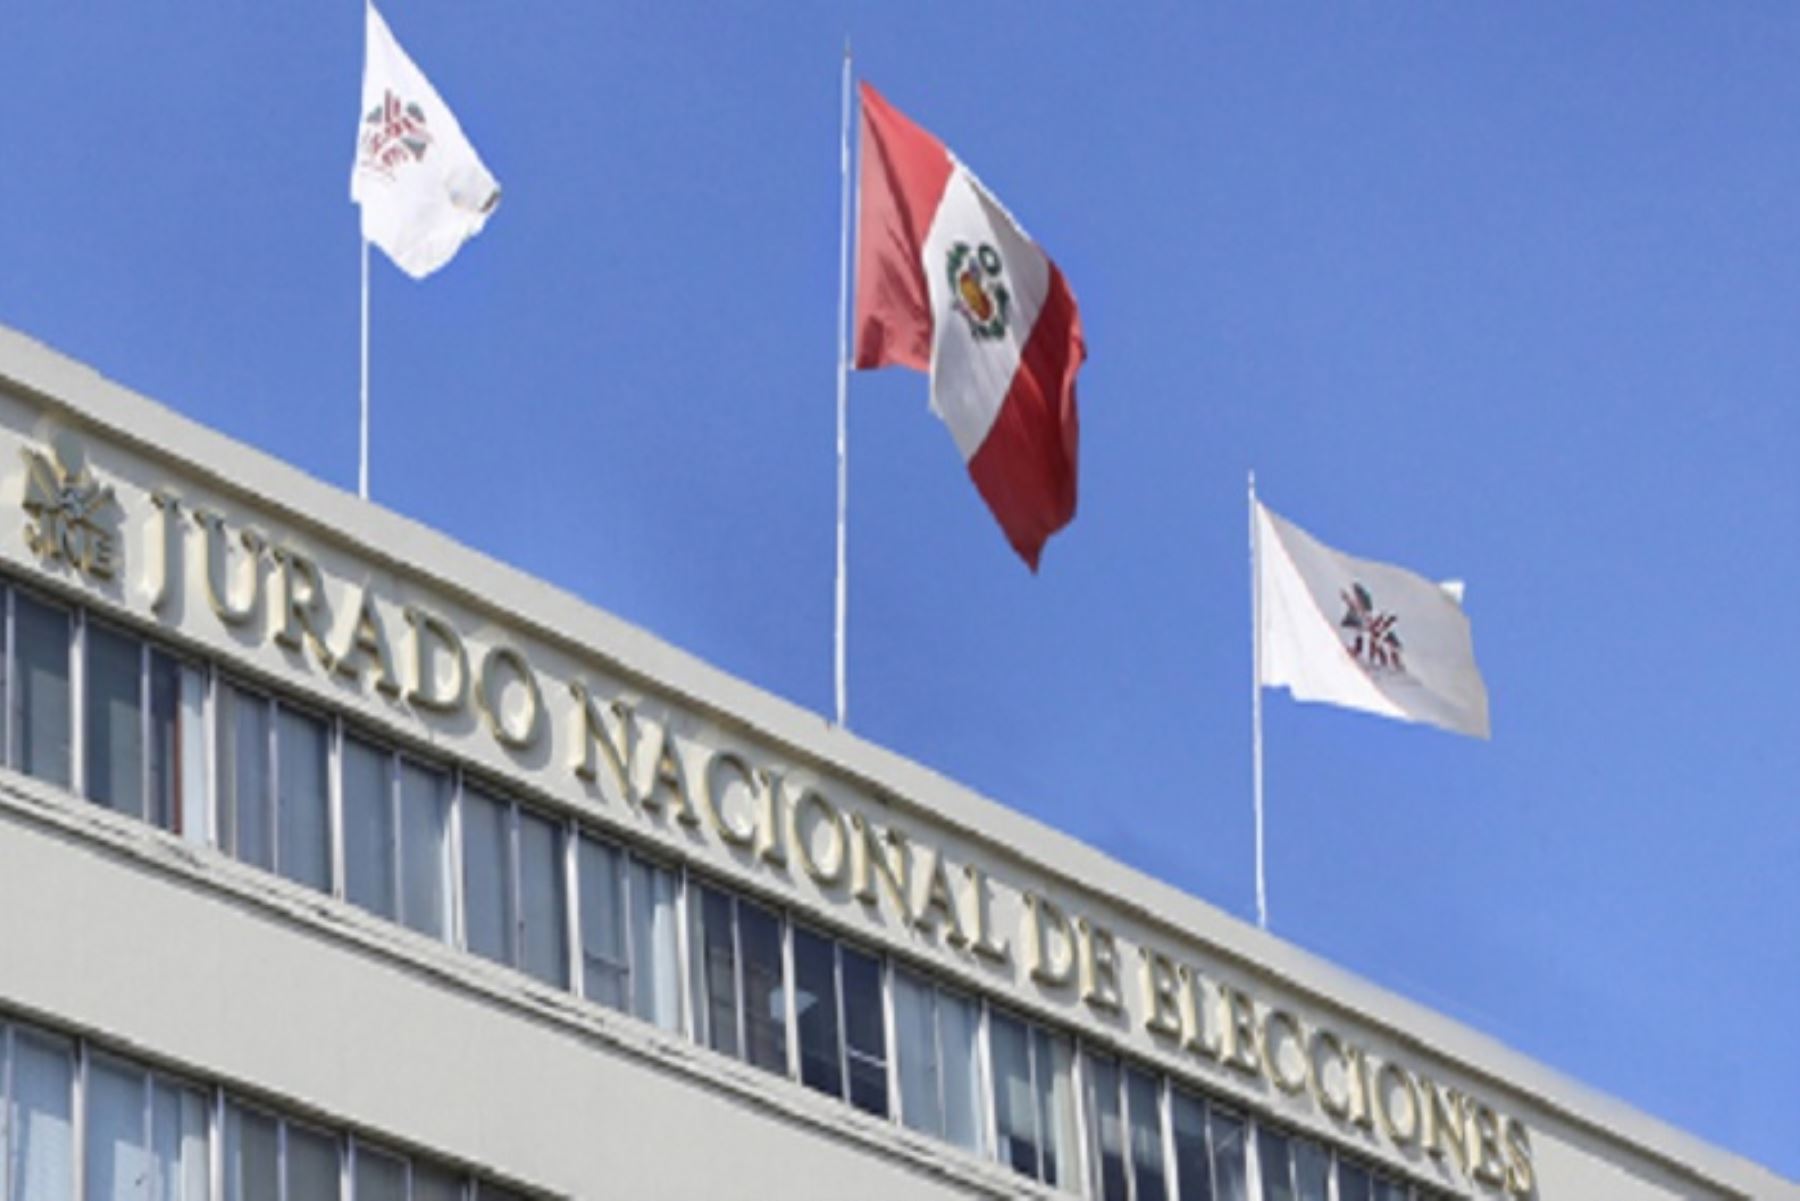 San Martín: JNE inaugurará oficina desconcentrada en Tarapoto para optimizar sus servicios